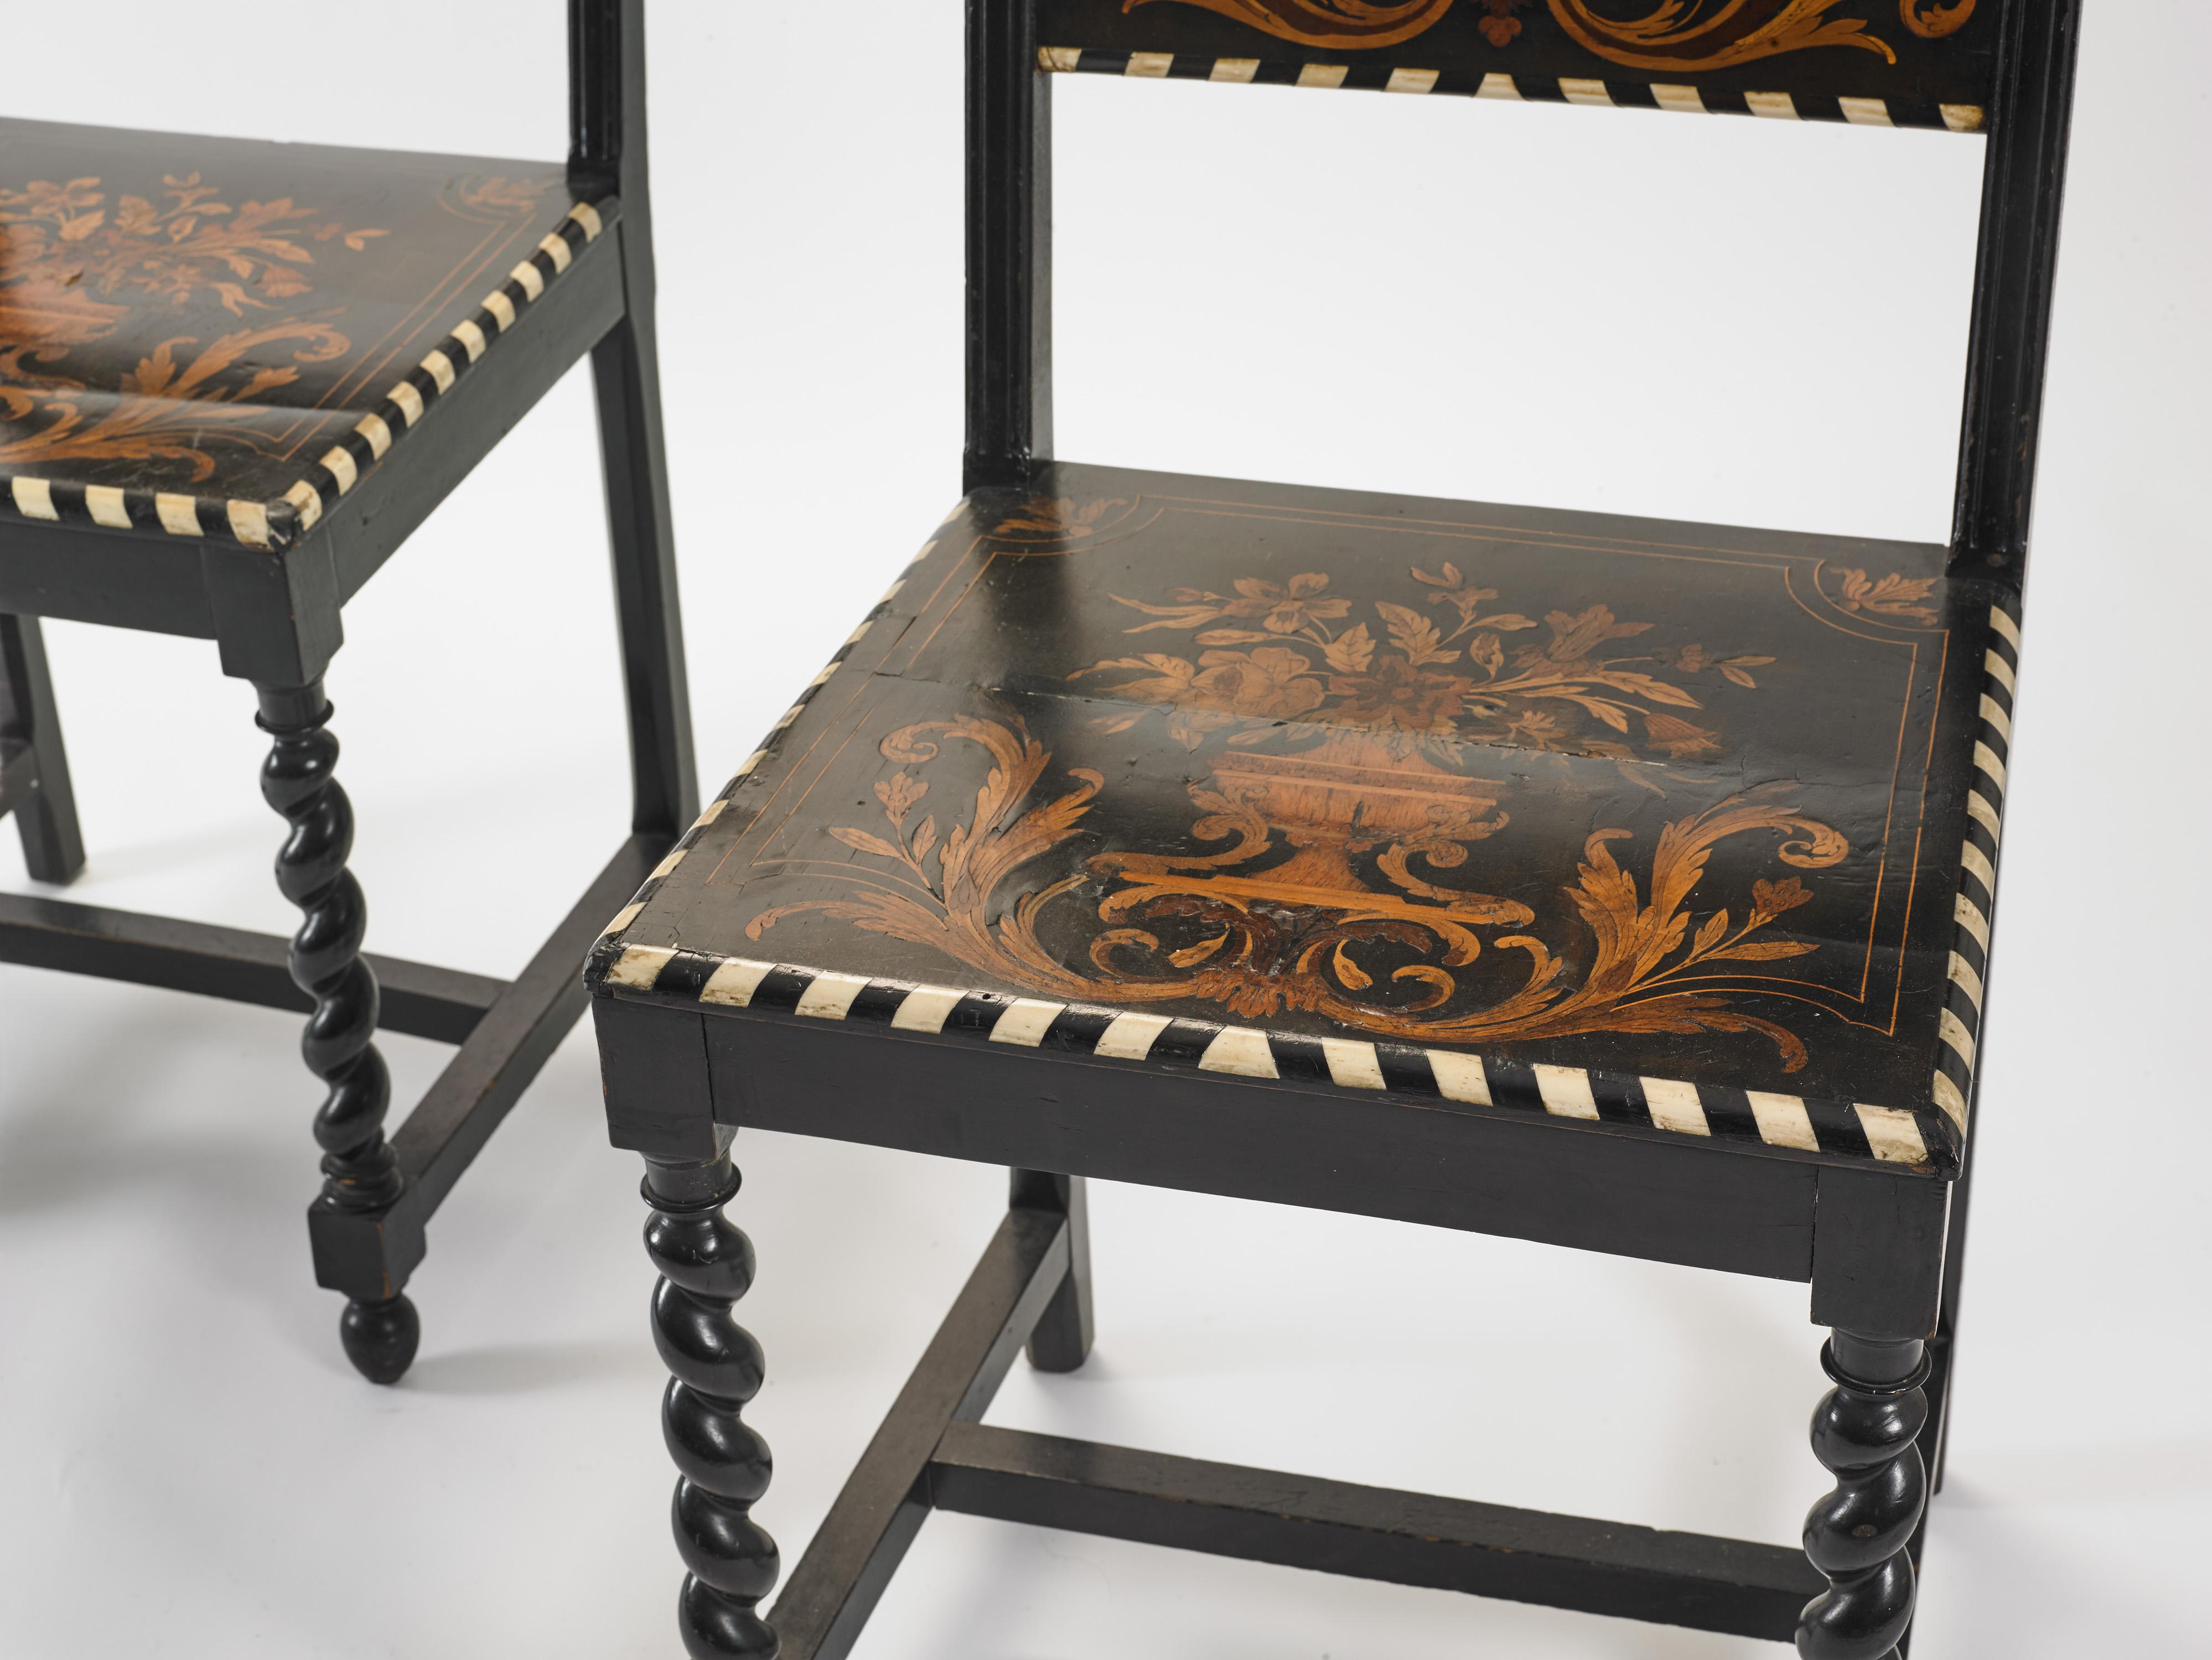 Italienische Stühle mit schwarzer Intarsie, die von geschnitzten Spiralbeinen getragen werden und mit Knochen an den Kanten und hellen Holzeinlegearbeiten mit Blumenmotiven verziert sind.
Italienischer Renaissancestil der Jahrhundertwende.
Guter,